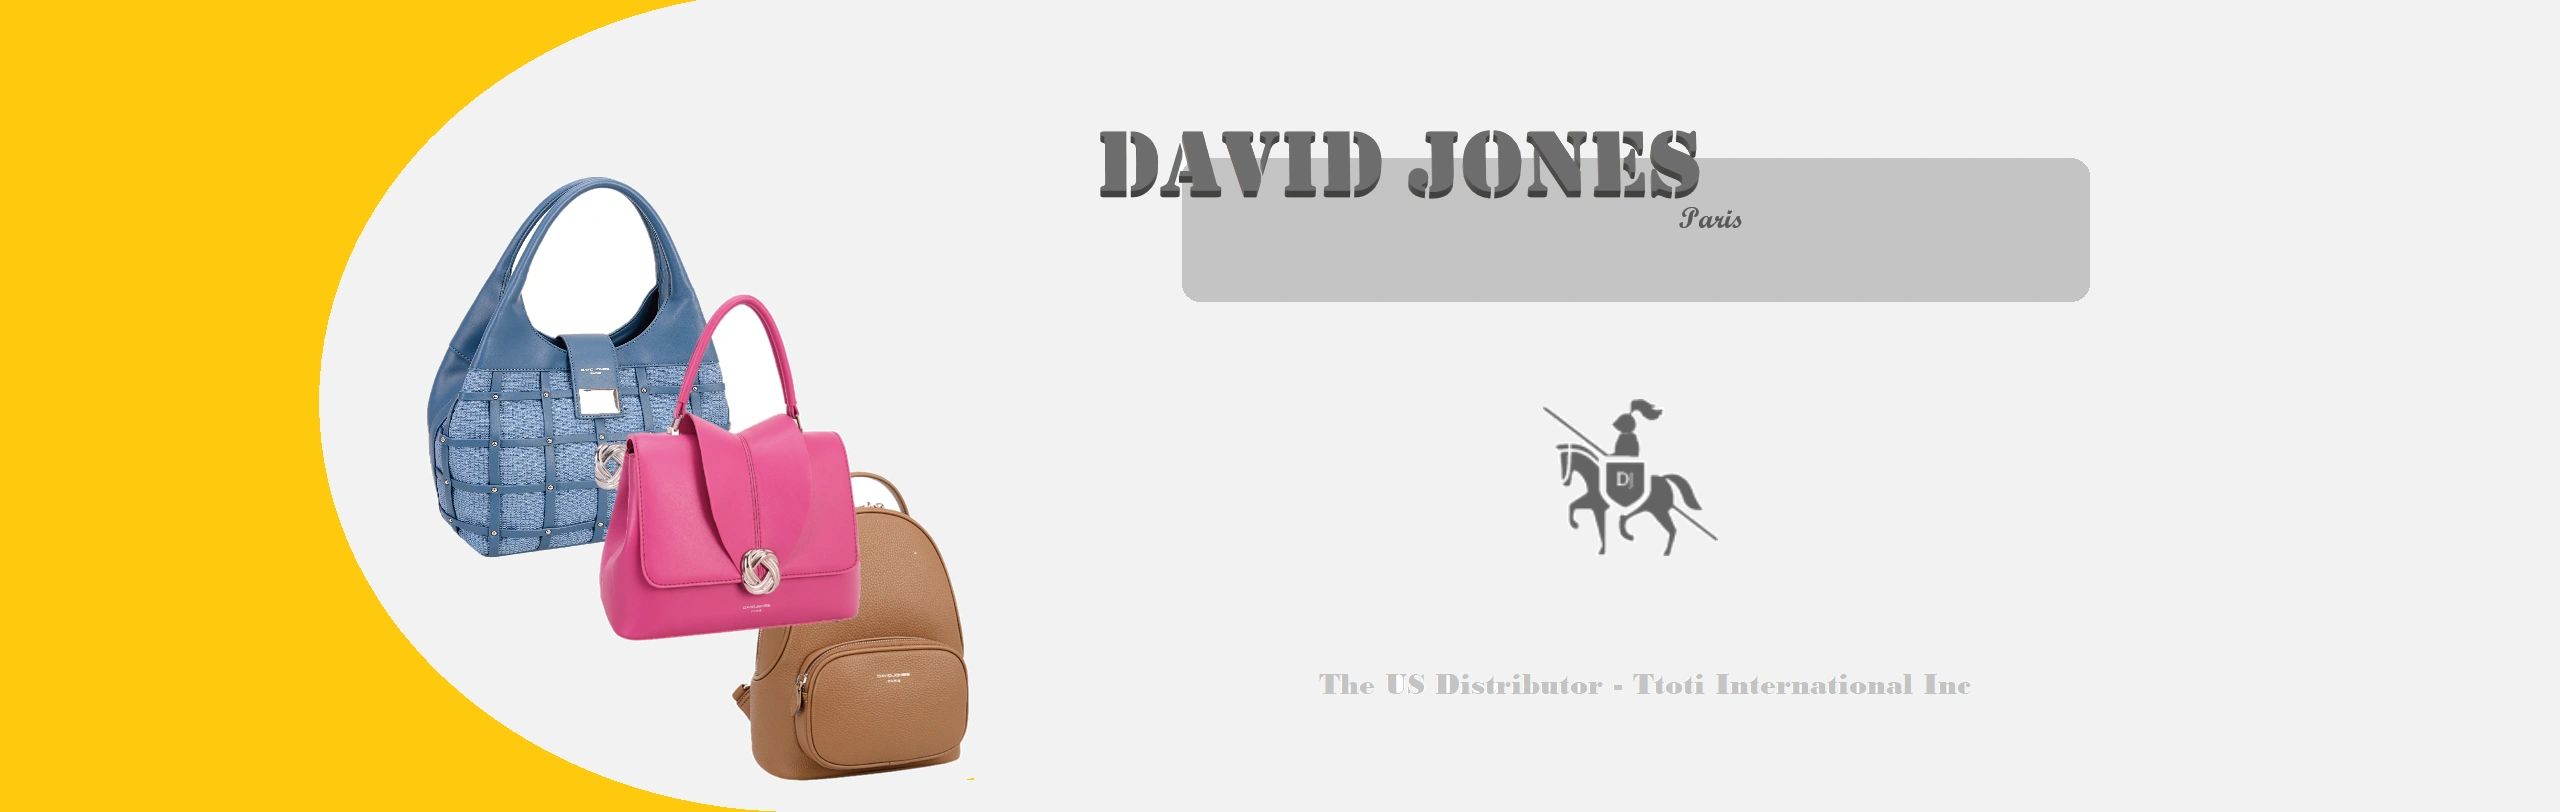 David Jones (Paris), Bags